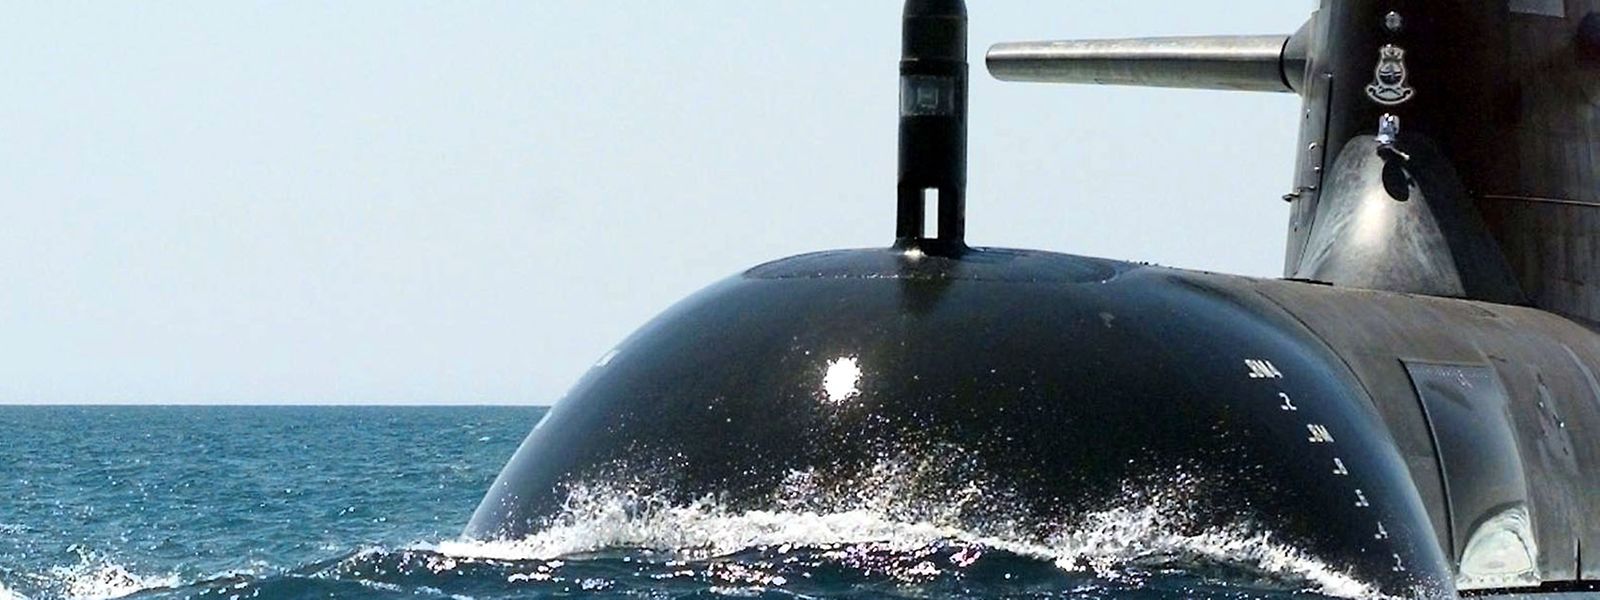 Die konventionell angetriebenen U-Boote Australiens haben eine deutlich geringere Reichweite als solche mit Nuklearantrieb.